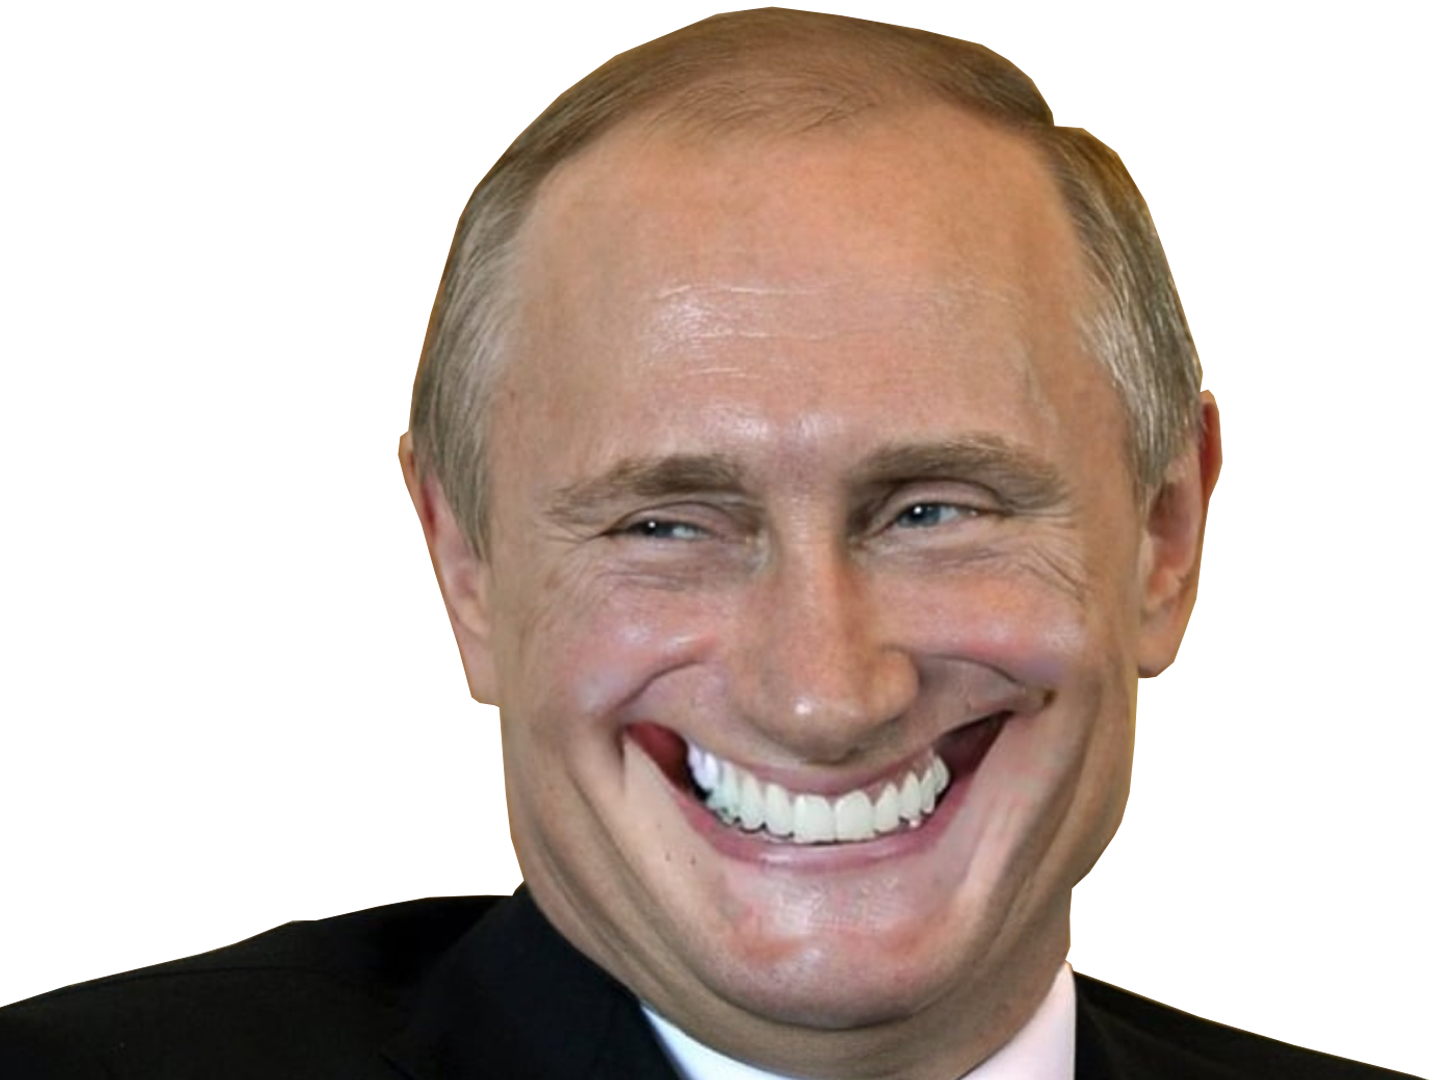 poutine sourire russe russie ukraine guerre ww3 macron biden alerte nucleaire ykk yorarien